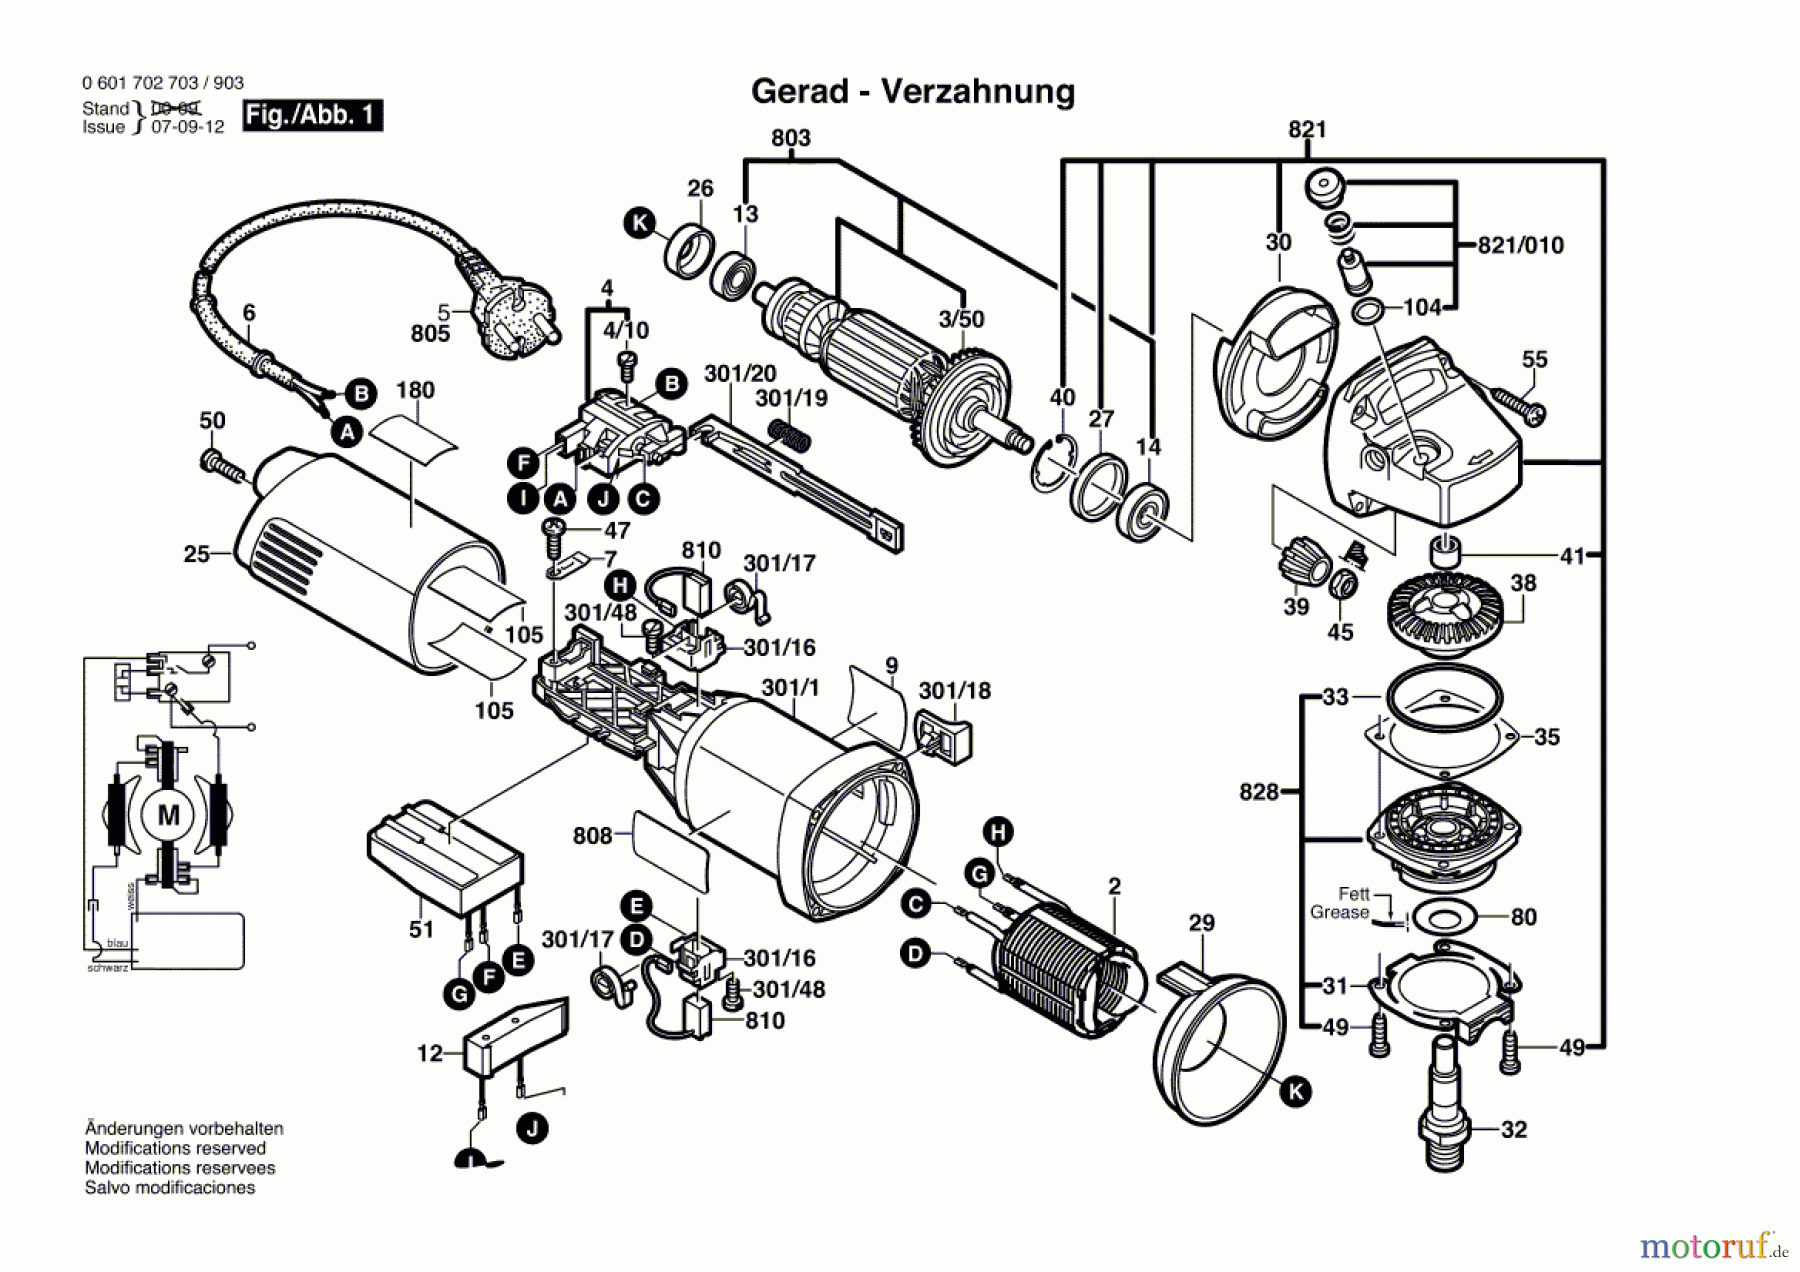  Bosch Werkzeug Winkelschleifer GWS 1000 Seite 1